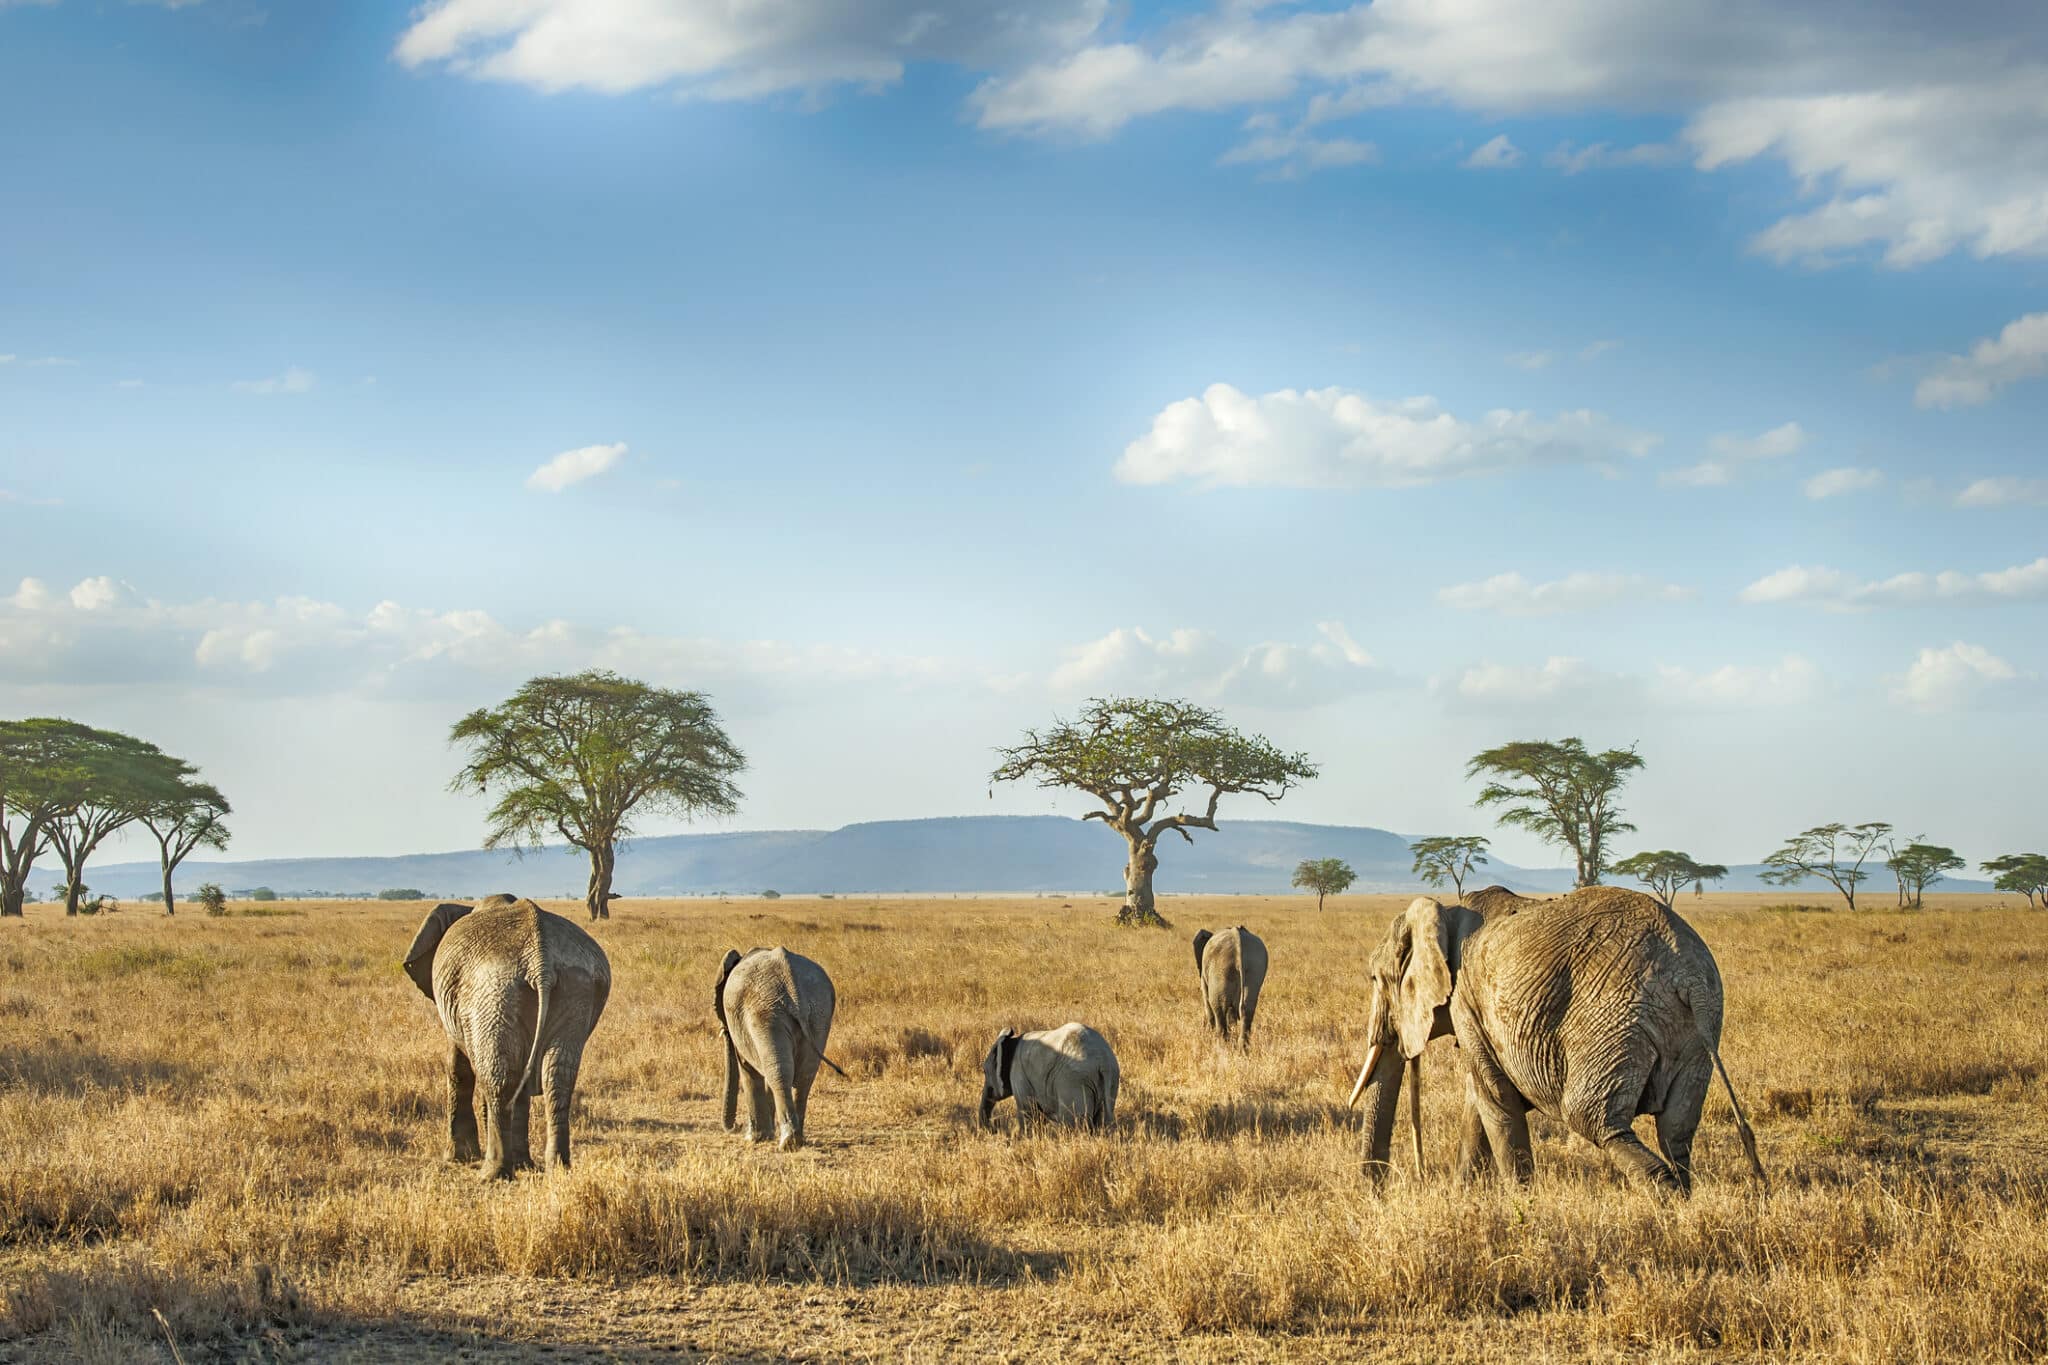 safaris in africa